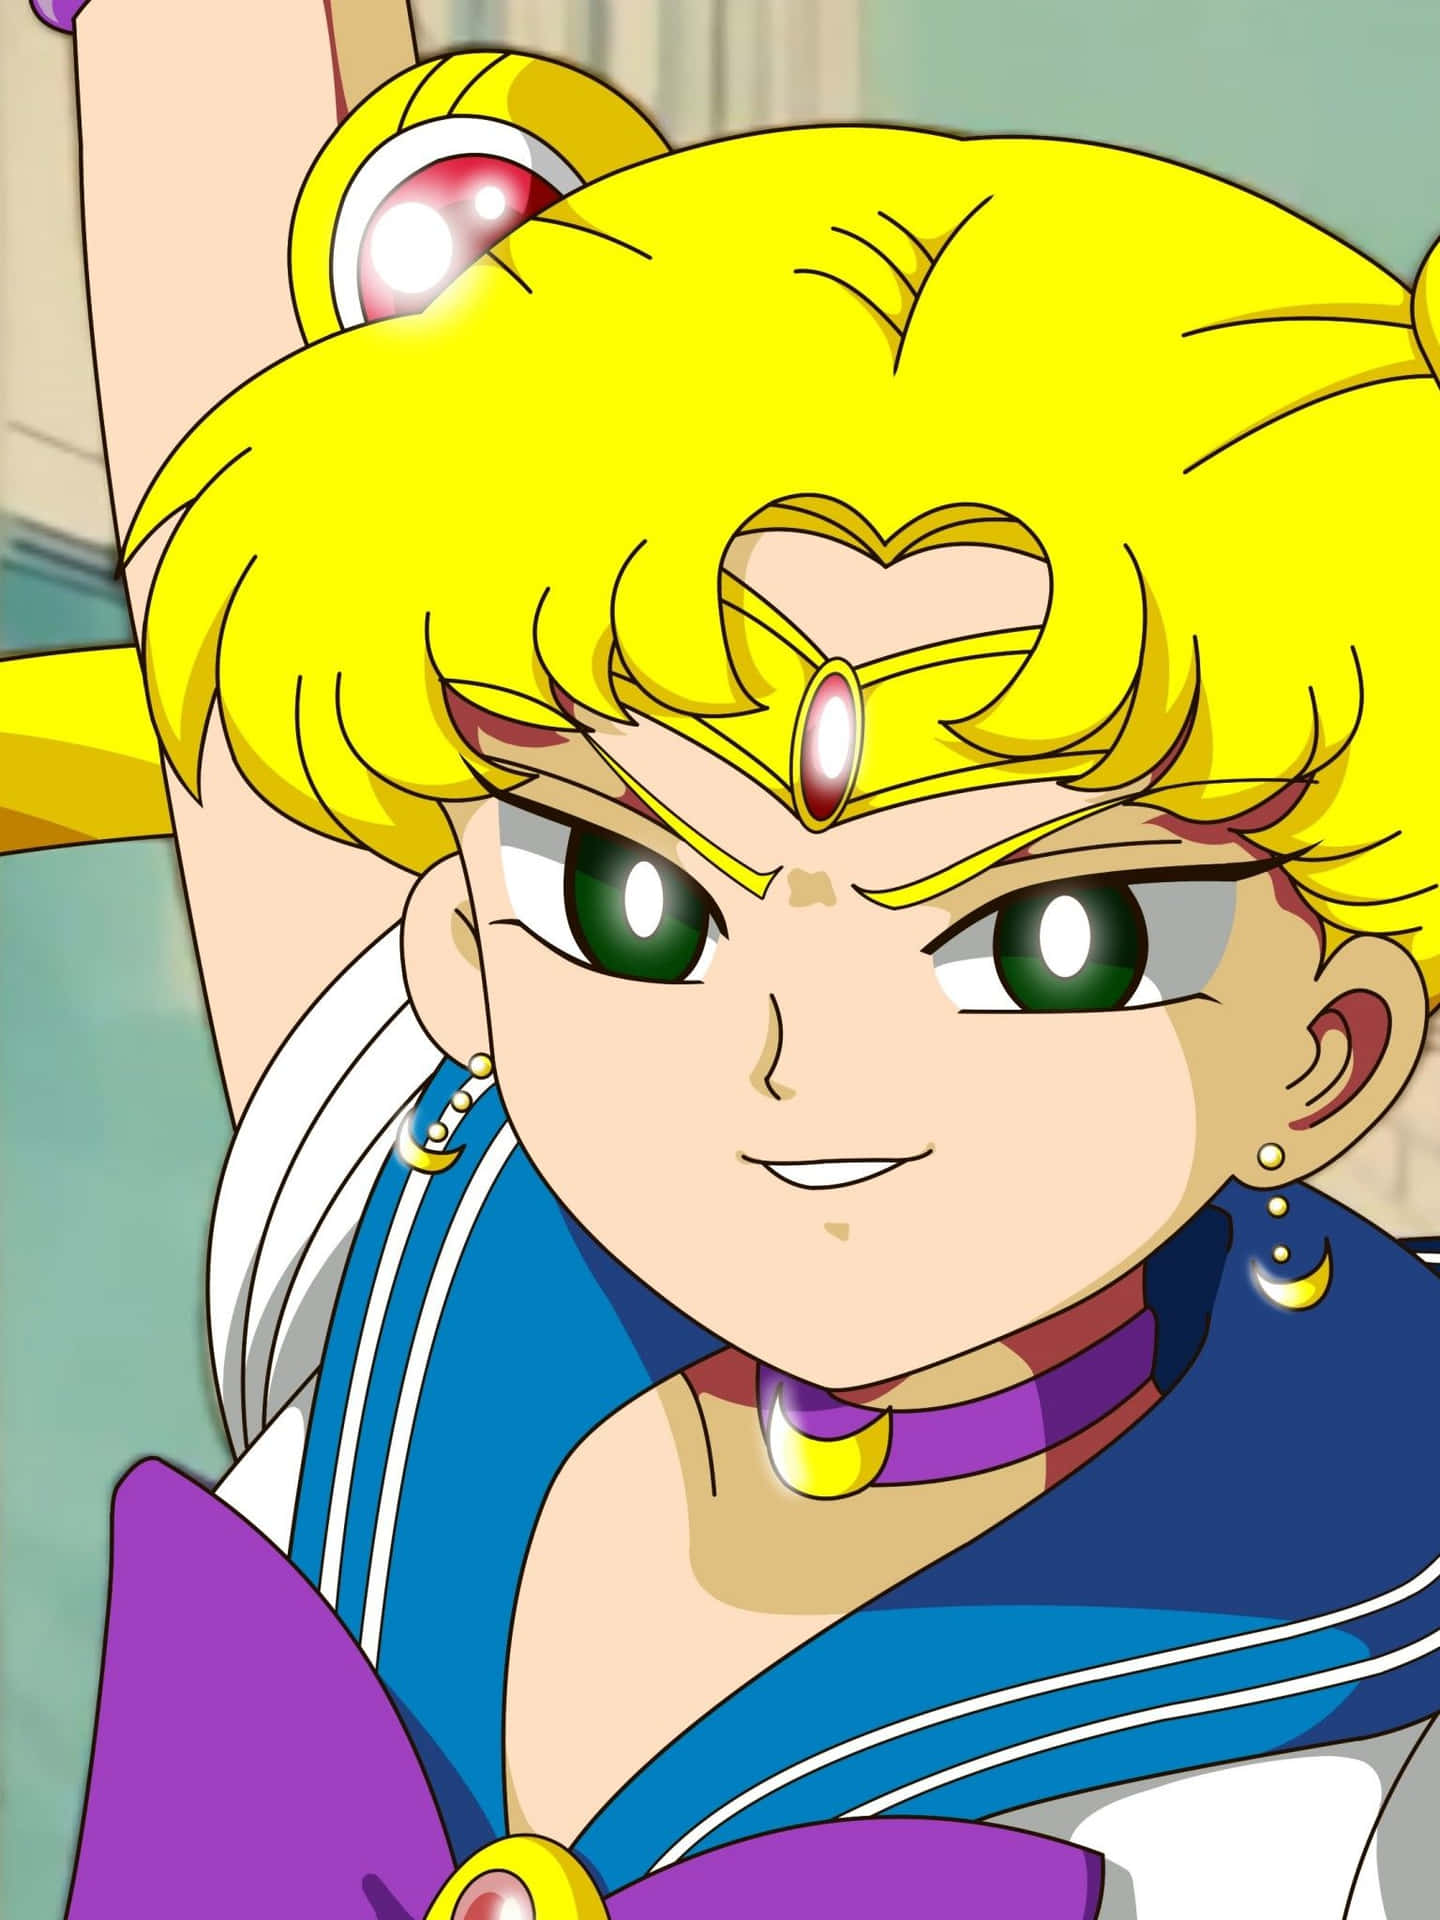 Seguii Tuoi Sogni E Non Arrenderti Mai - Estetica Sailor Moon. Sfondo